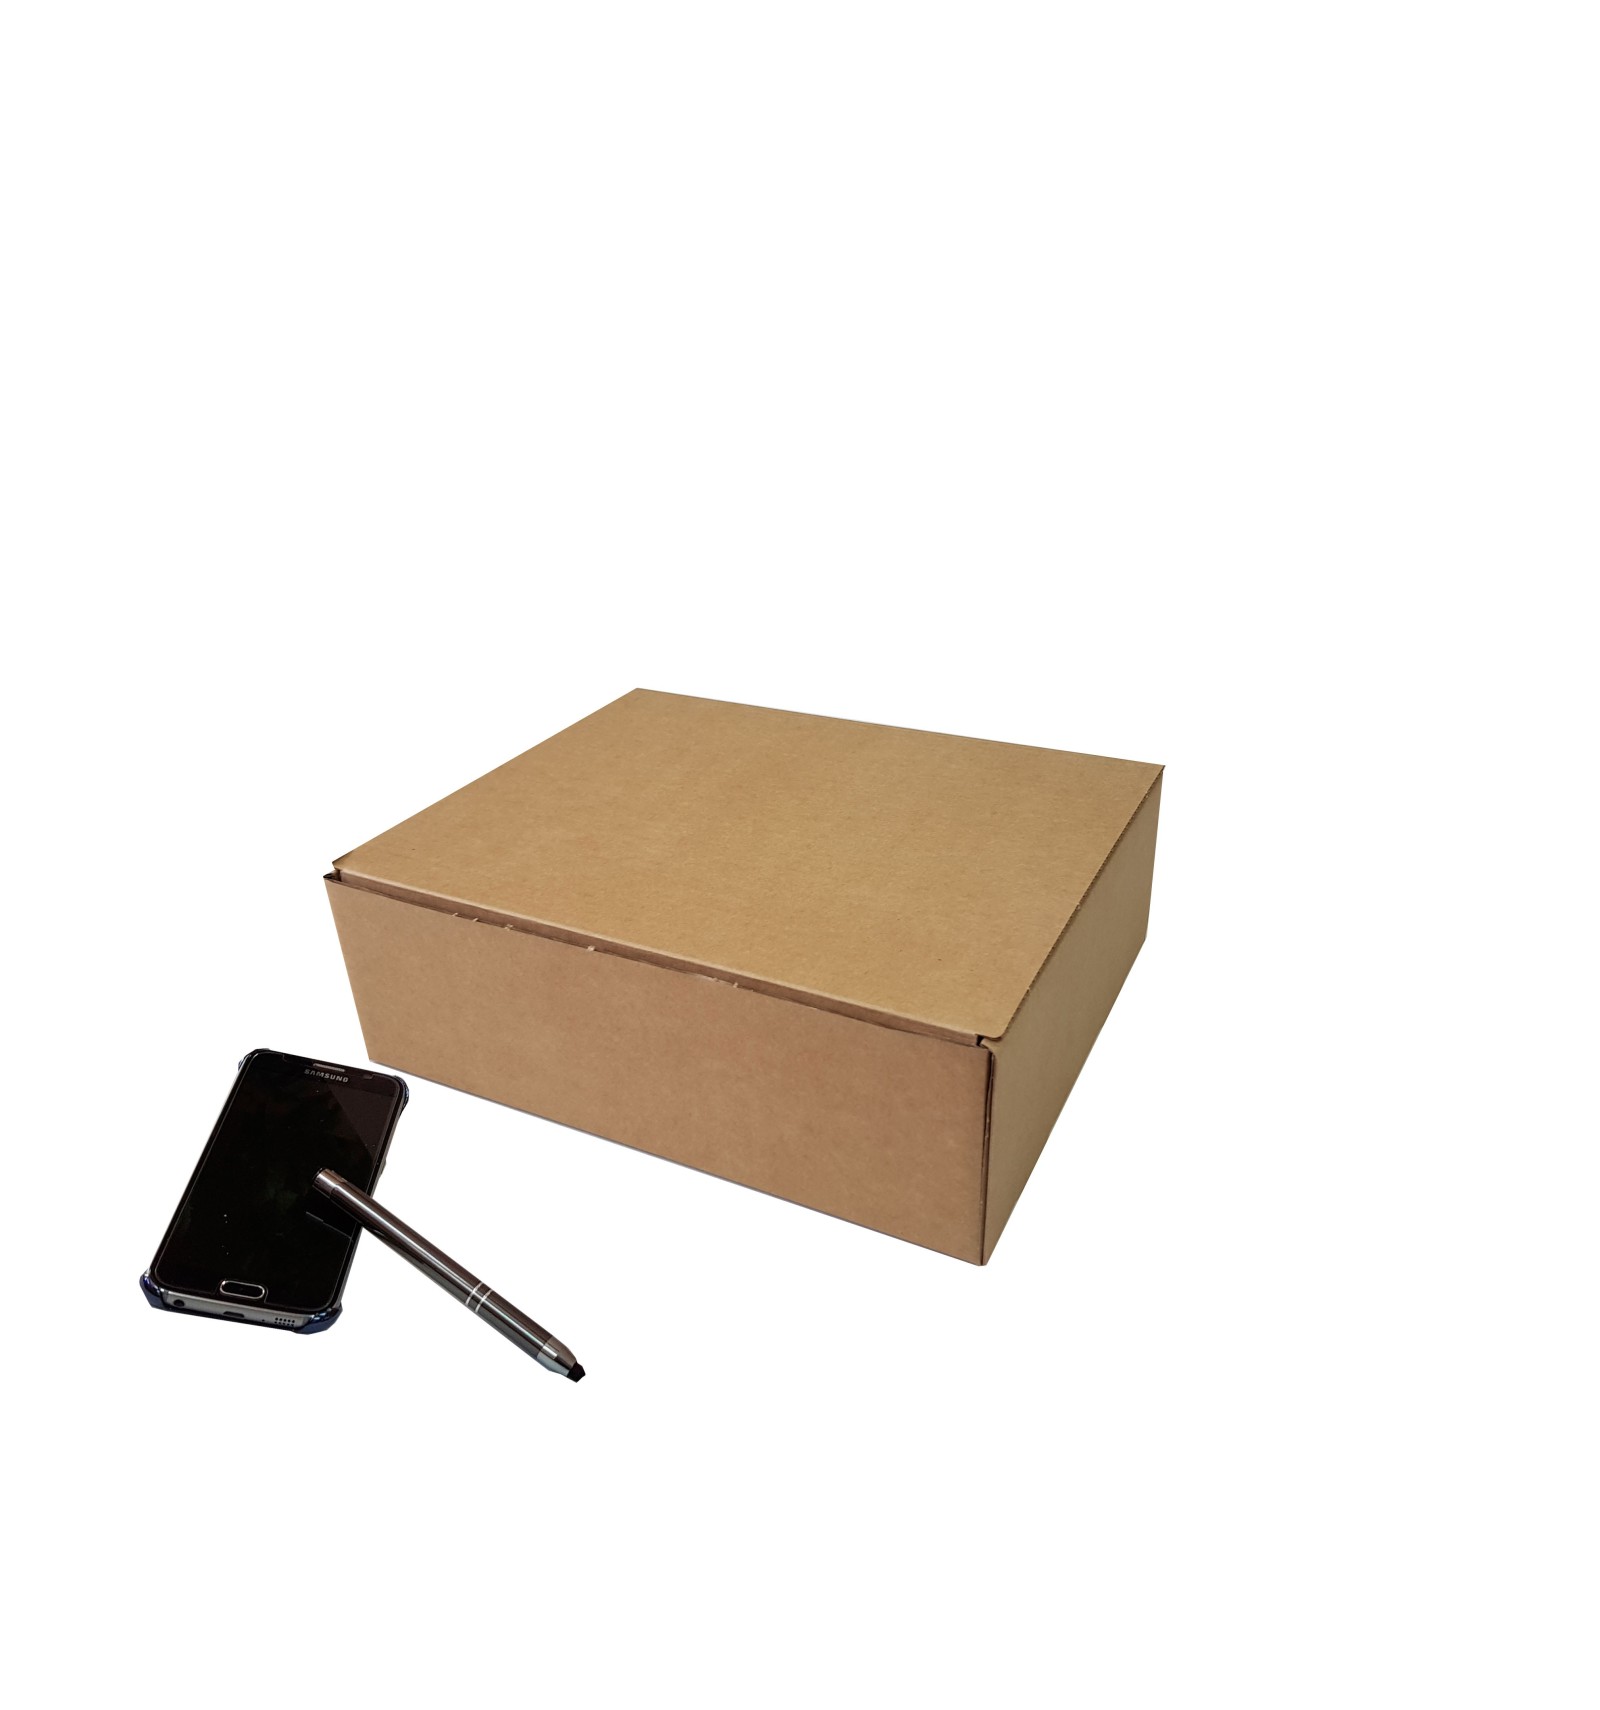 Caja regalo cartón 18,5 x 18,5 cm marrón - Sobres y cajas de